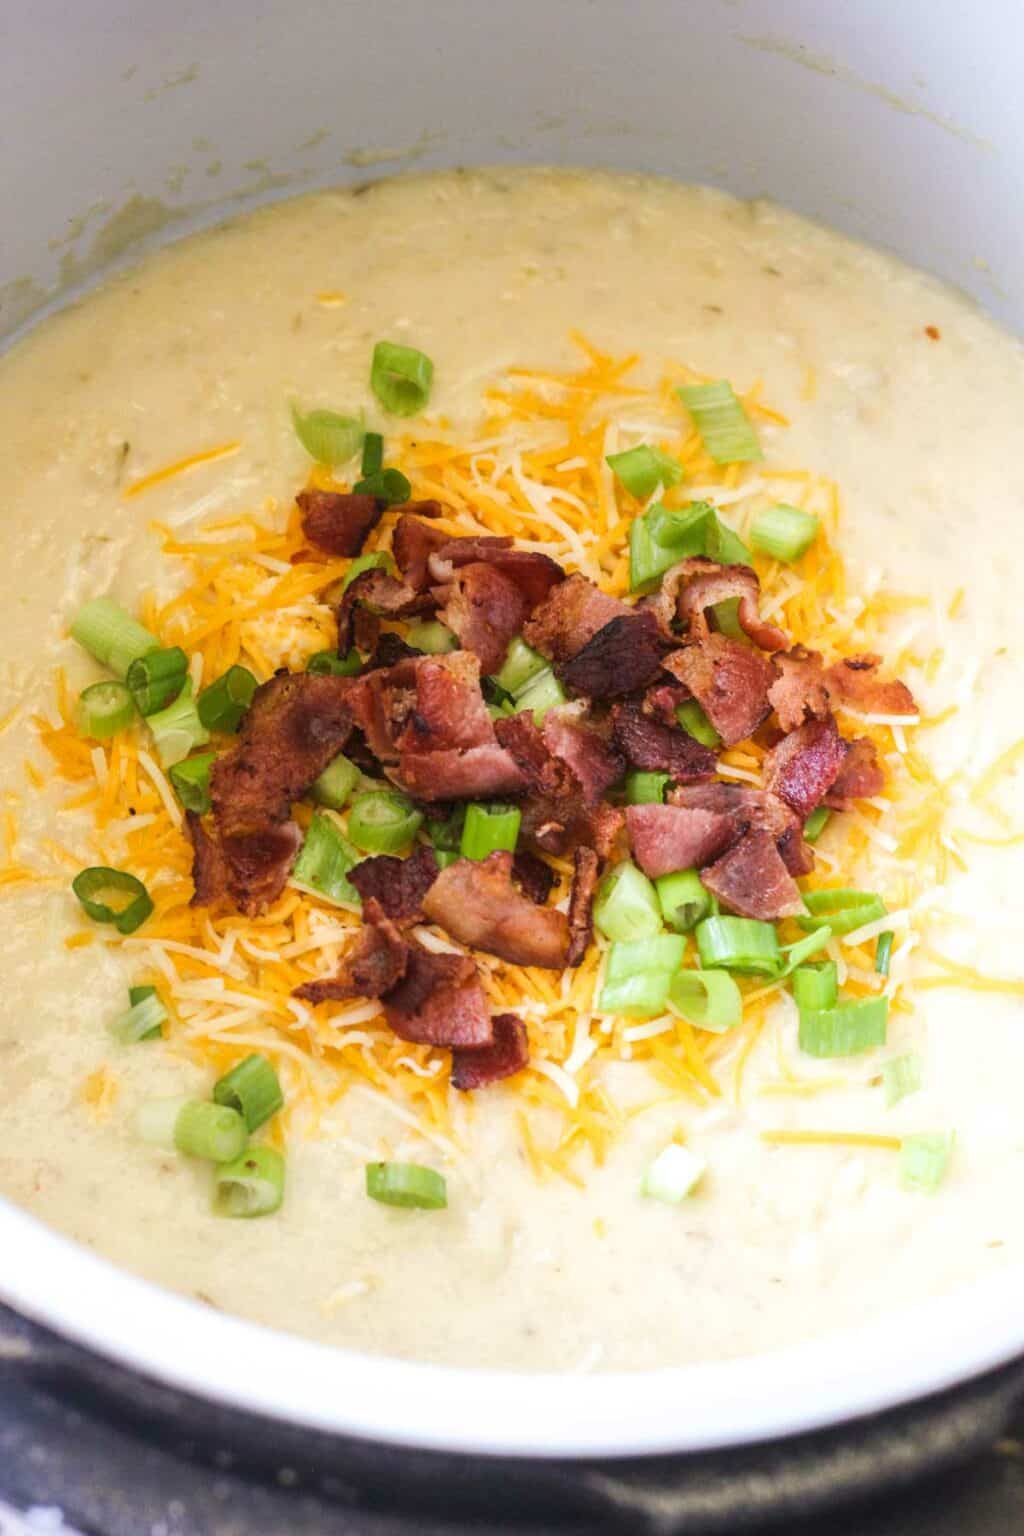 Ninja Foodi Loaded Potato Soup - The Top Meal